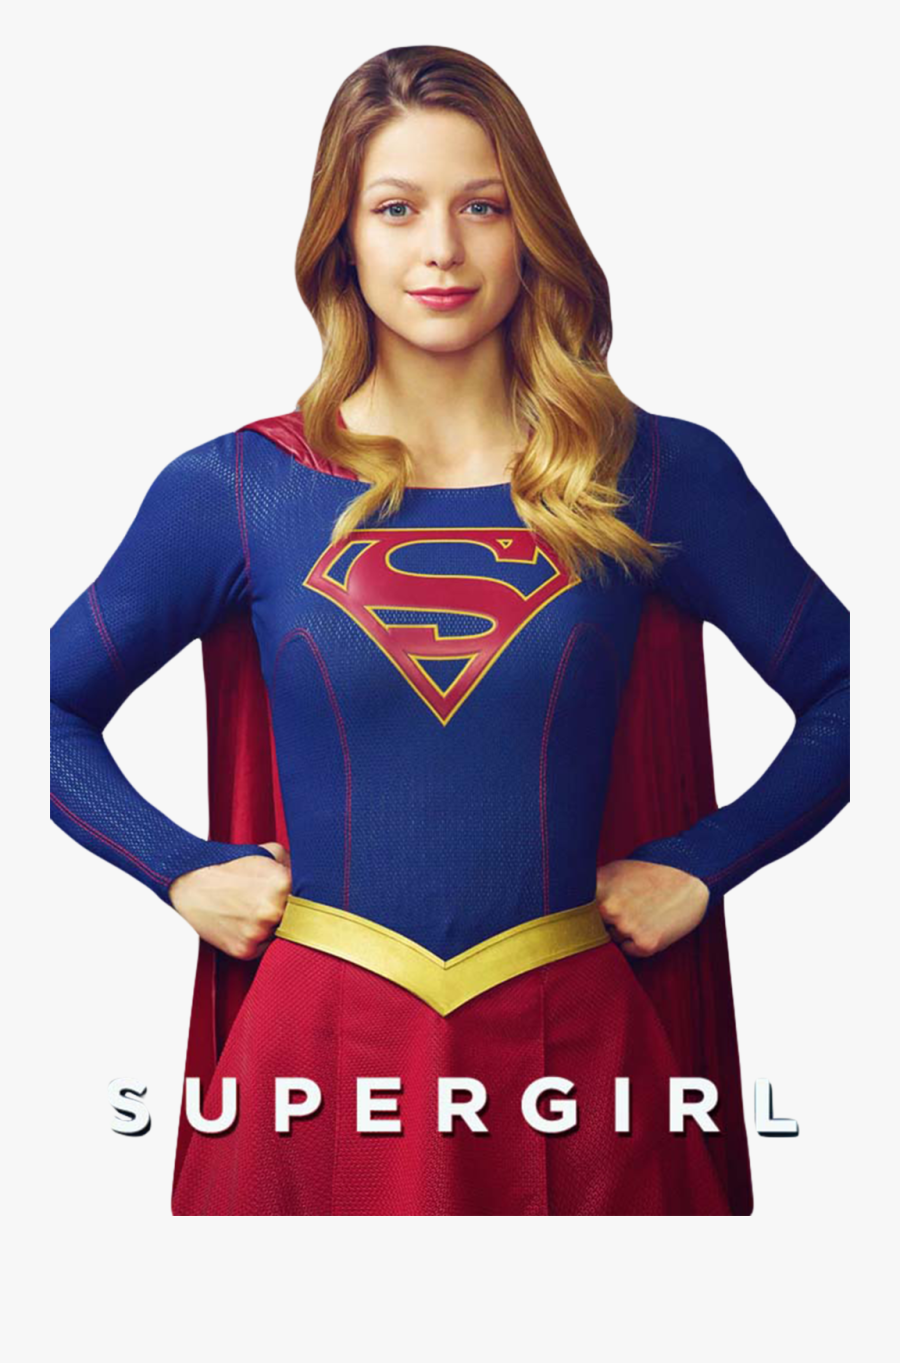 Download Supergirl Transparent - Kara Danvers As Supergirl, Transparent Clipart